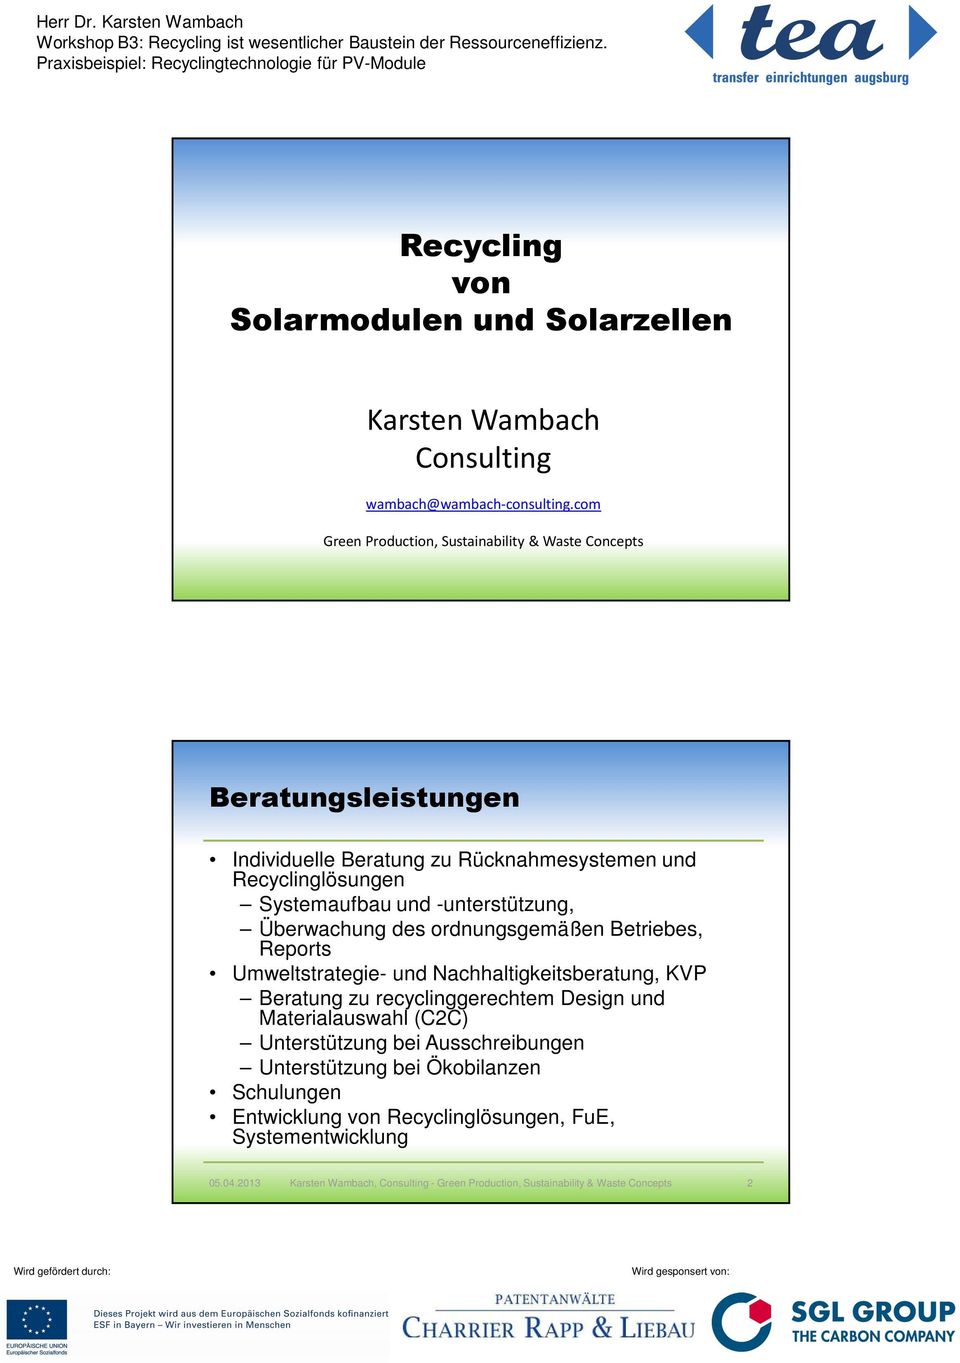 Systemaufbau und -unterstützung, Überwachung des ordnungsgemäßen Betriebes, Reports Umweltstrategie- und Nachhaltigkeitsberatung, KVP